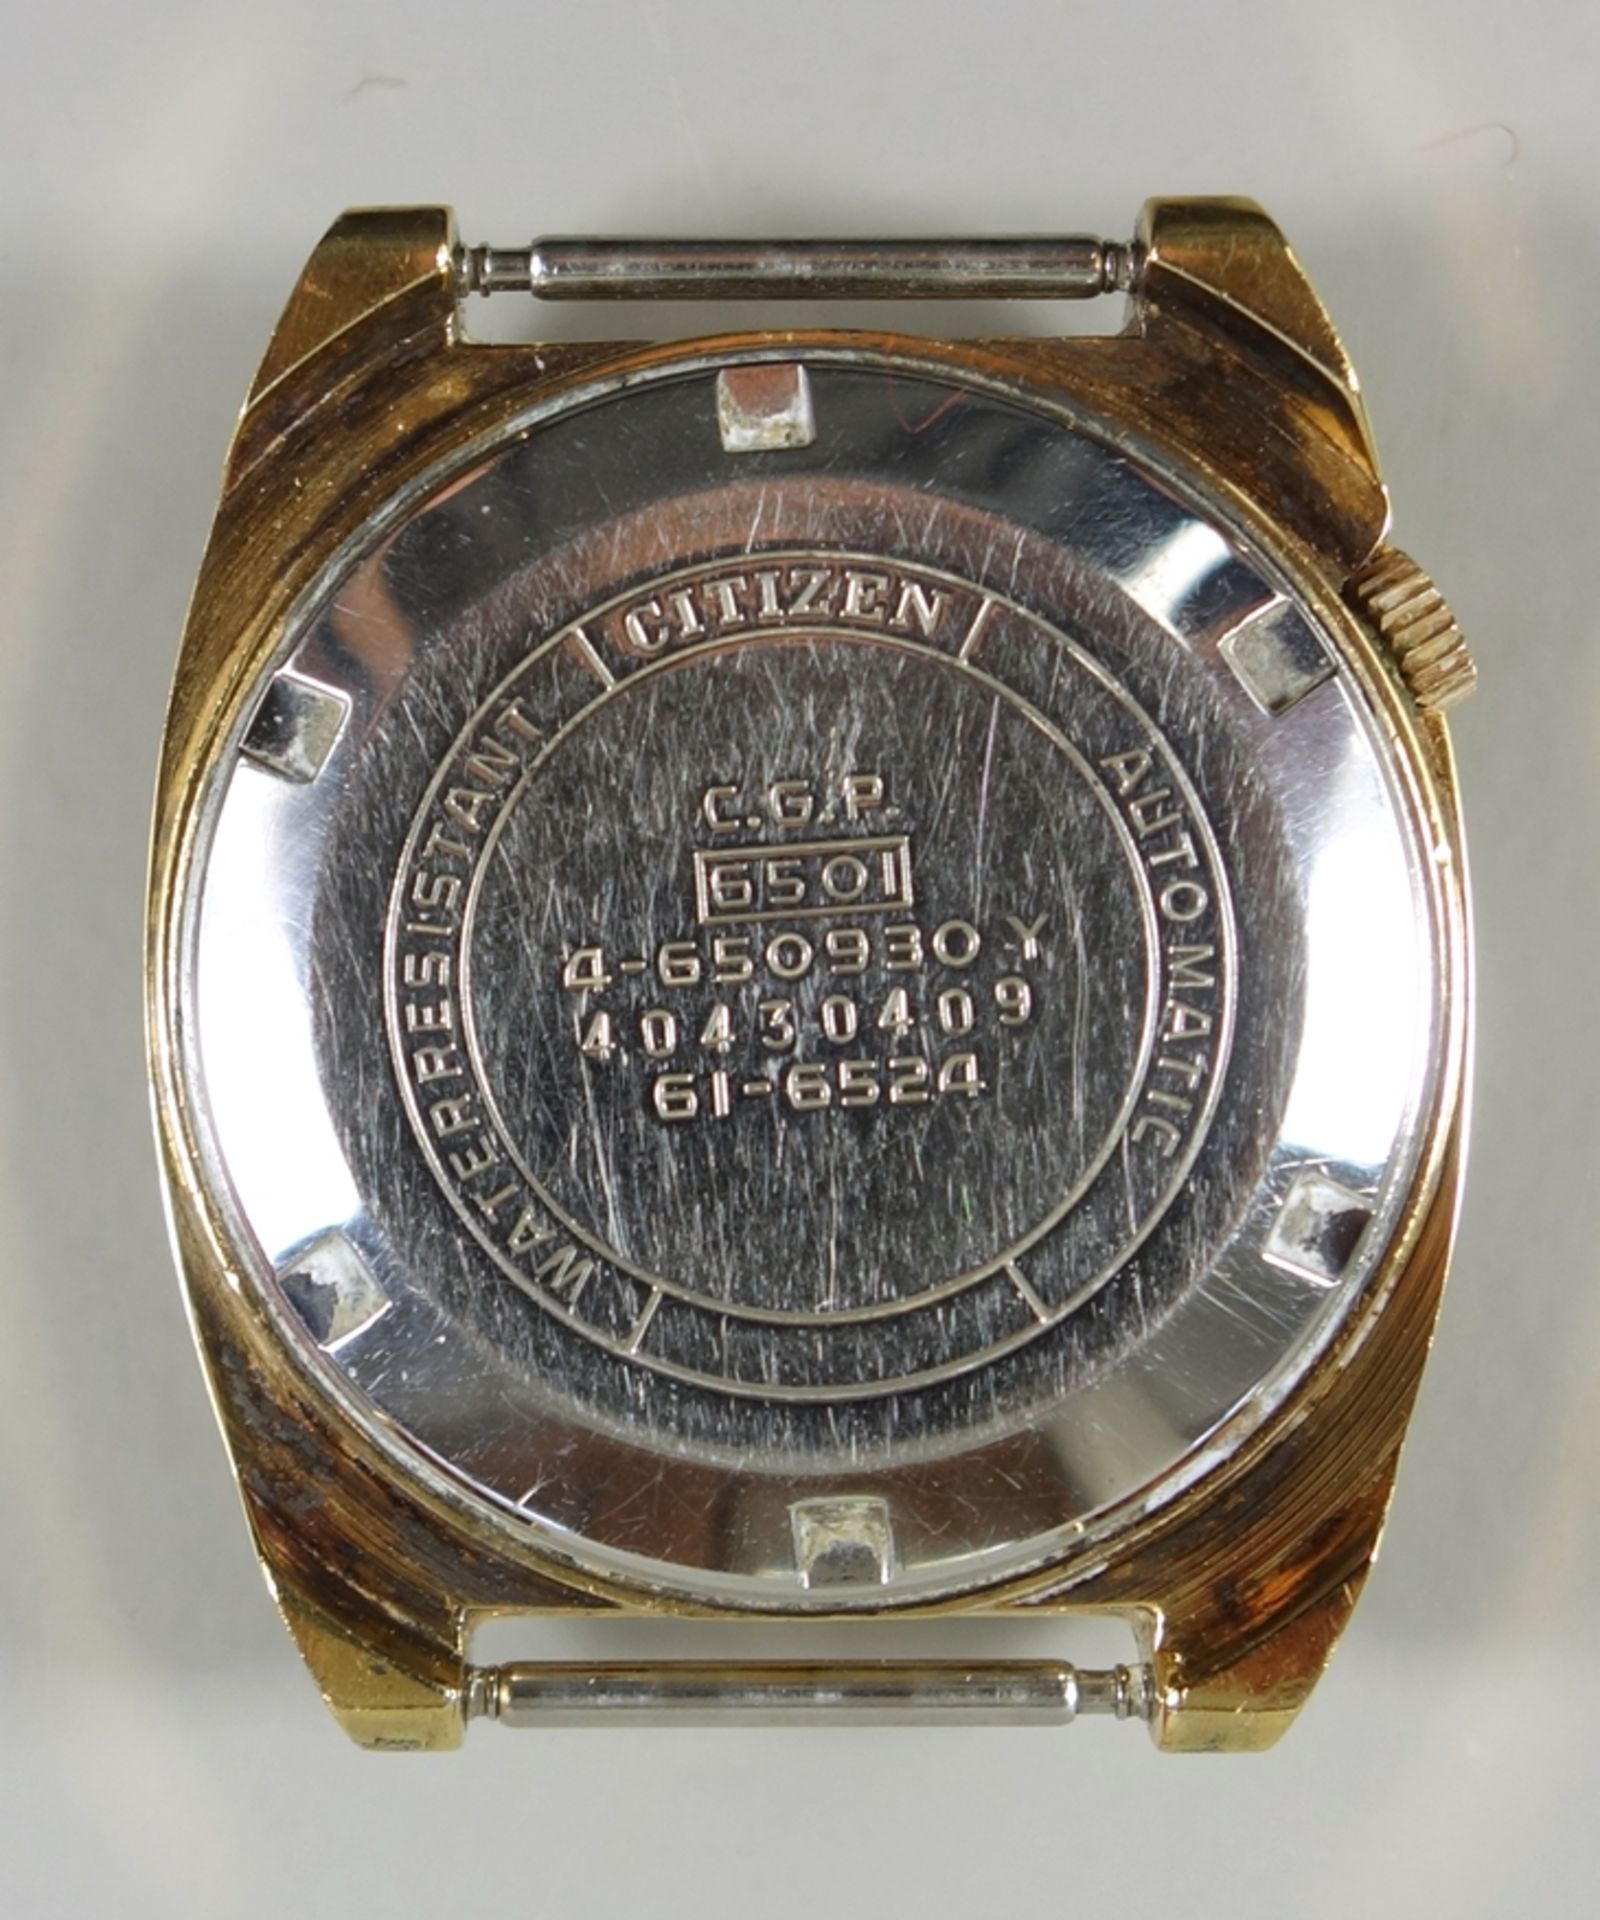 Armbanduhr Citizen Kal. 6501 Automatic, 70er Jahre, vergoldetes Gehäuse, goldenes Zifferblatt mit - Bild 2 aus 3